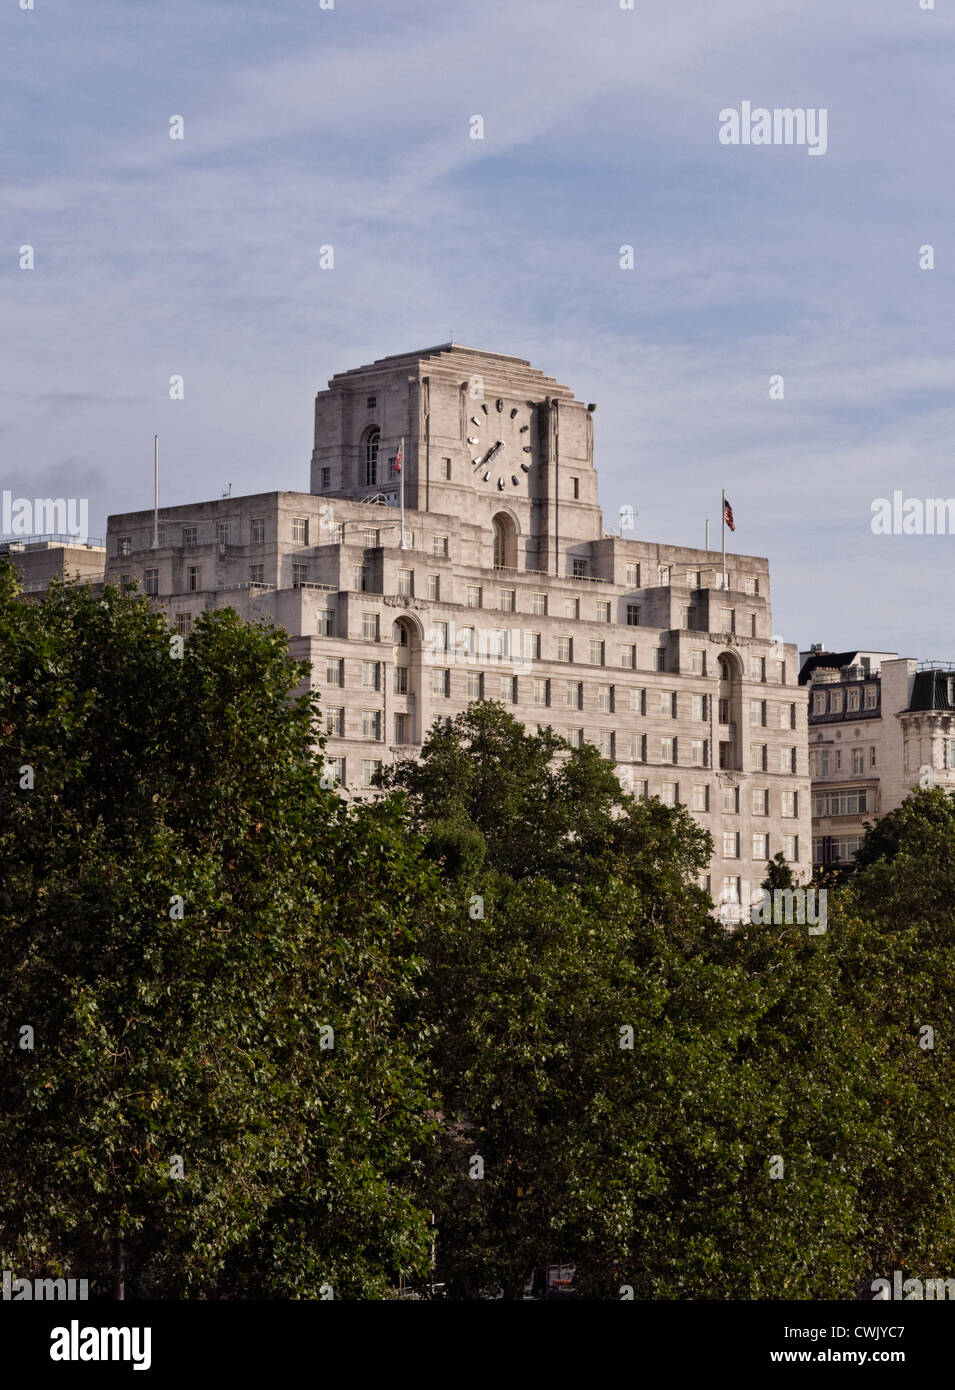 Shell Mex House, à 80 Strand, London, un bâtiment Art déco historique avec l'un des quartiers les plus grandes horloges Banque D'Images